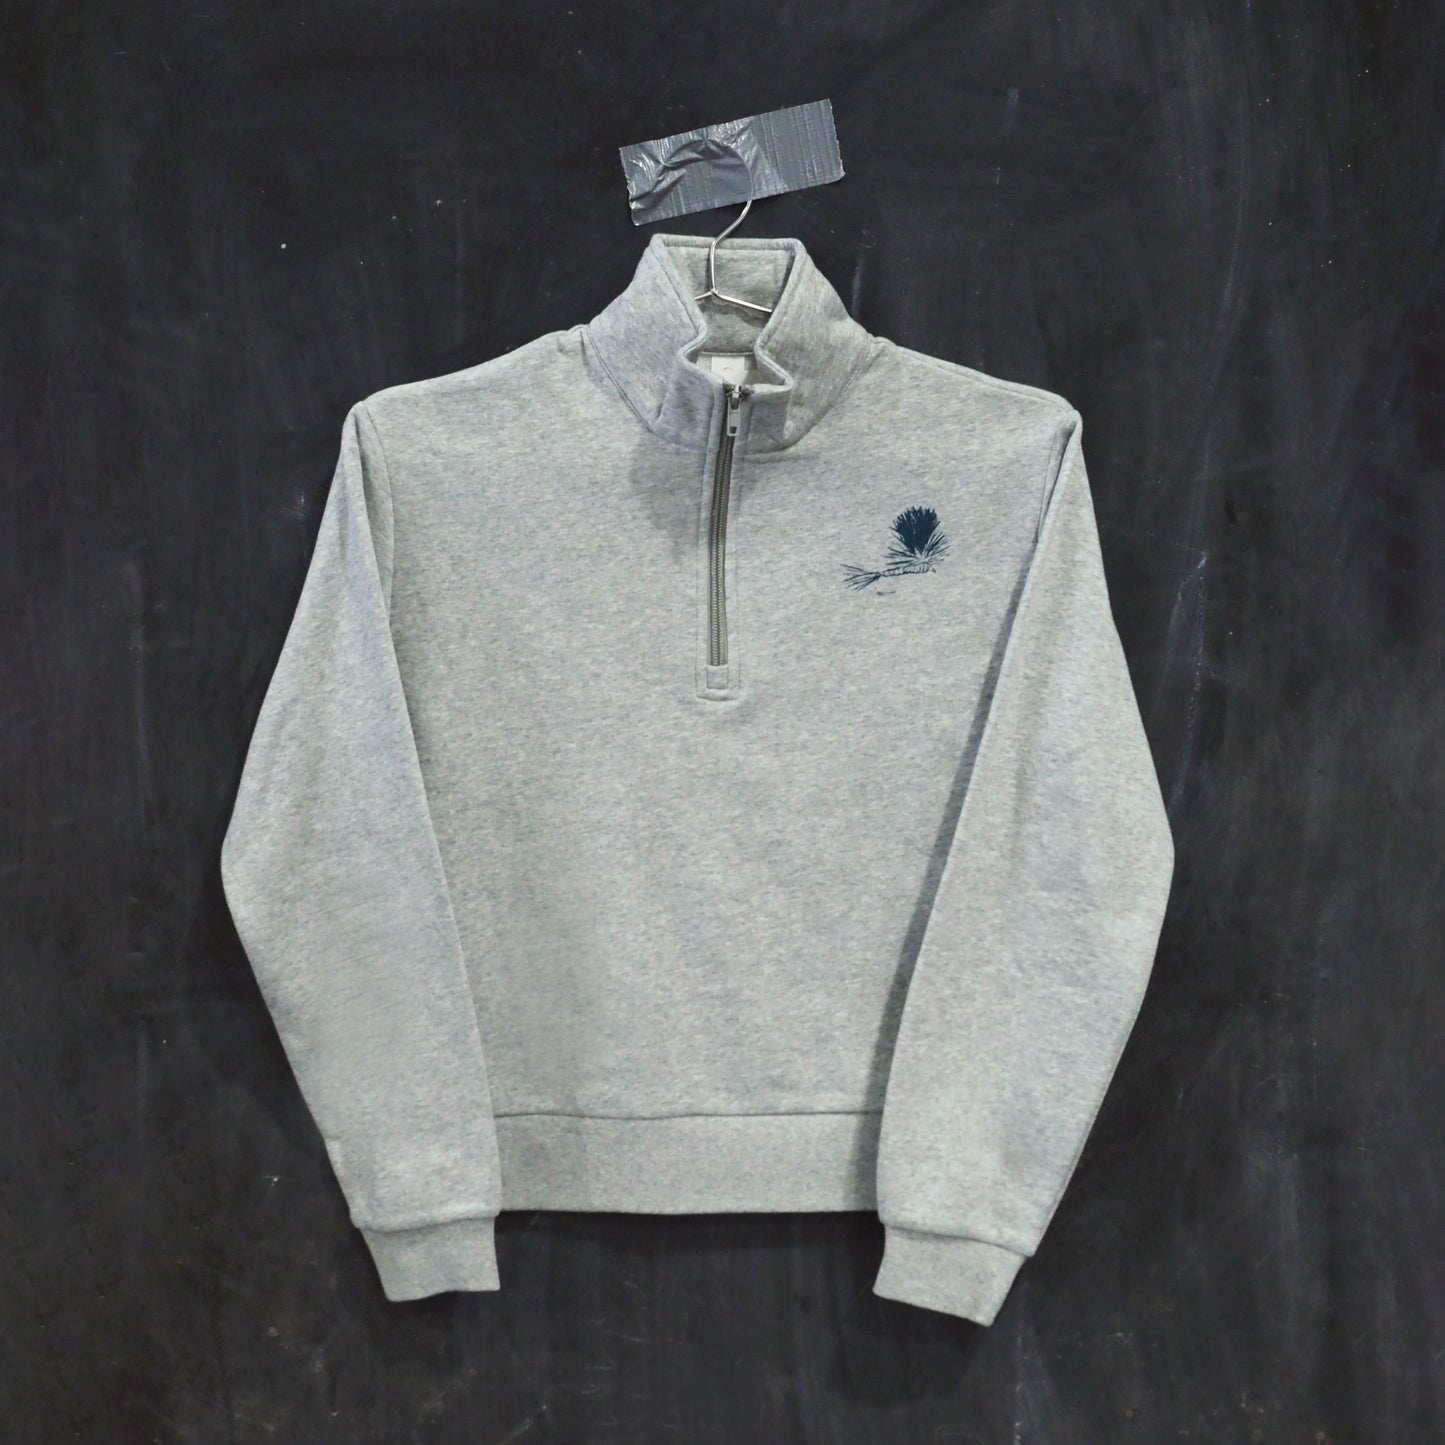 "Fish of Montana" Quarter Zip Sweatshirt in Grey